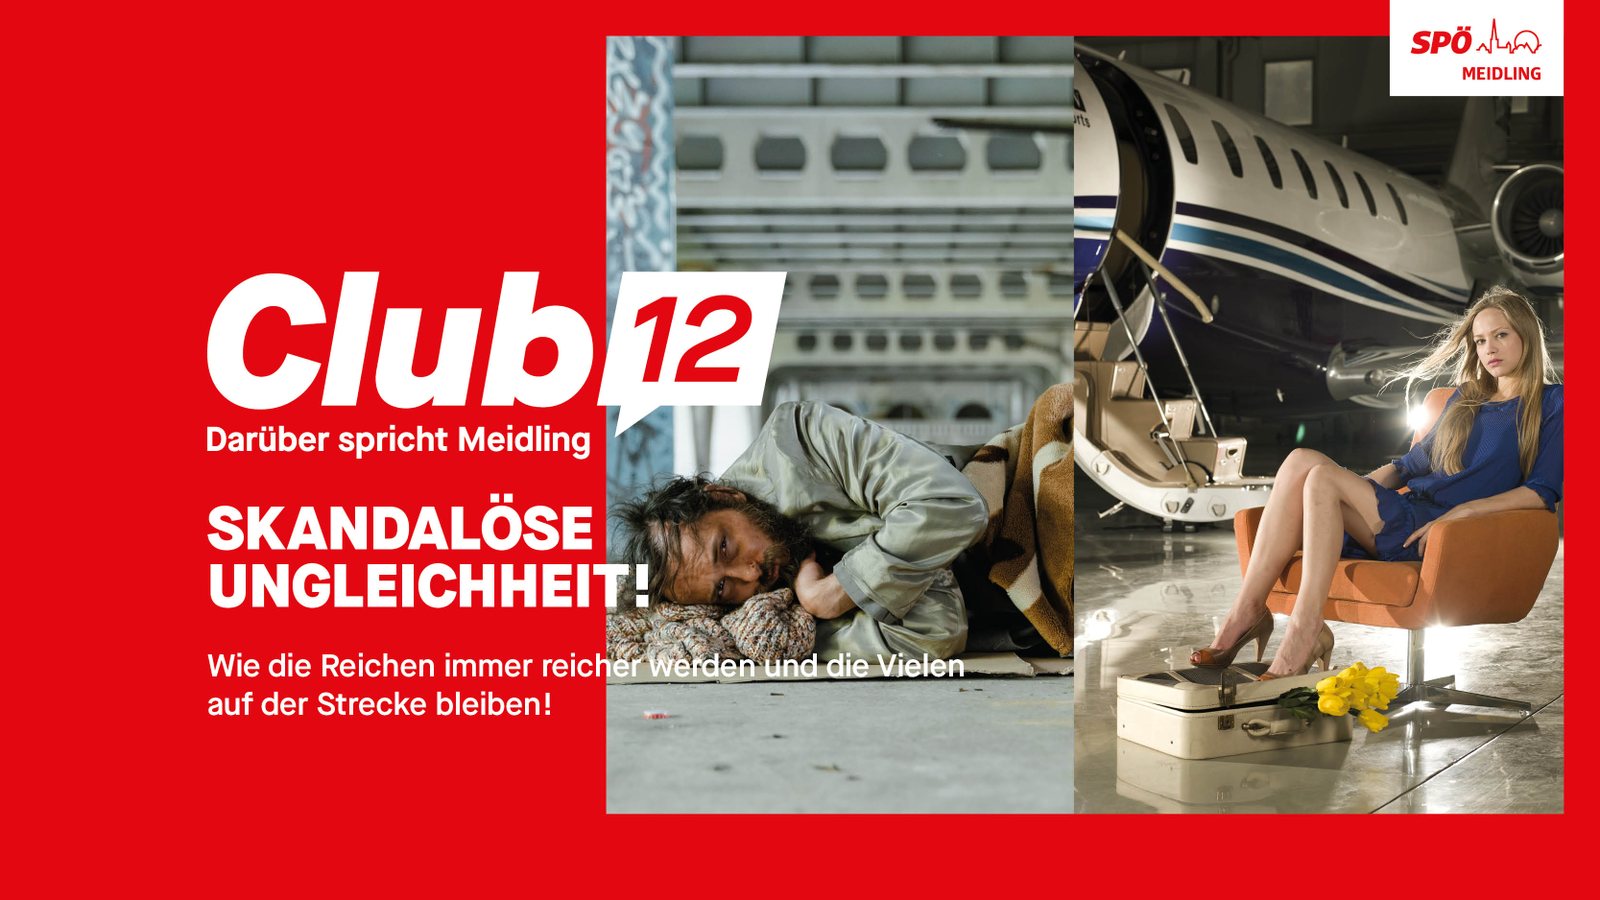 Club 12: Darüber spricht Meidling